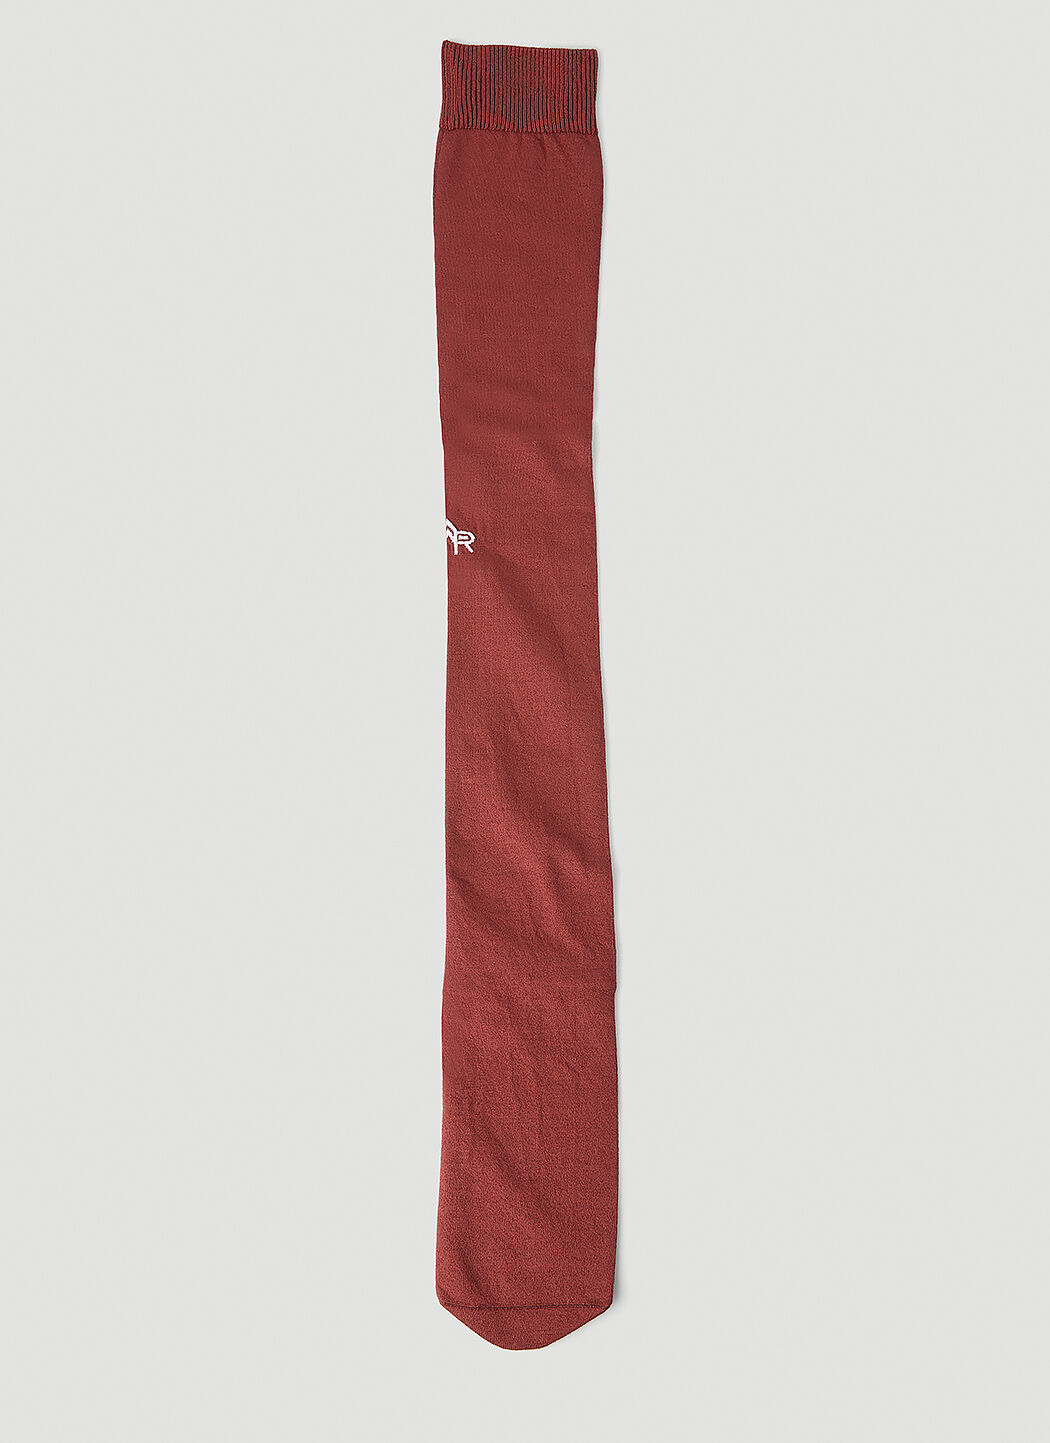 VETEMENTS Logo Embroidered Long Socks White vet0254008